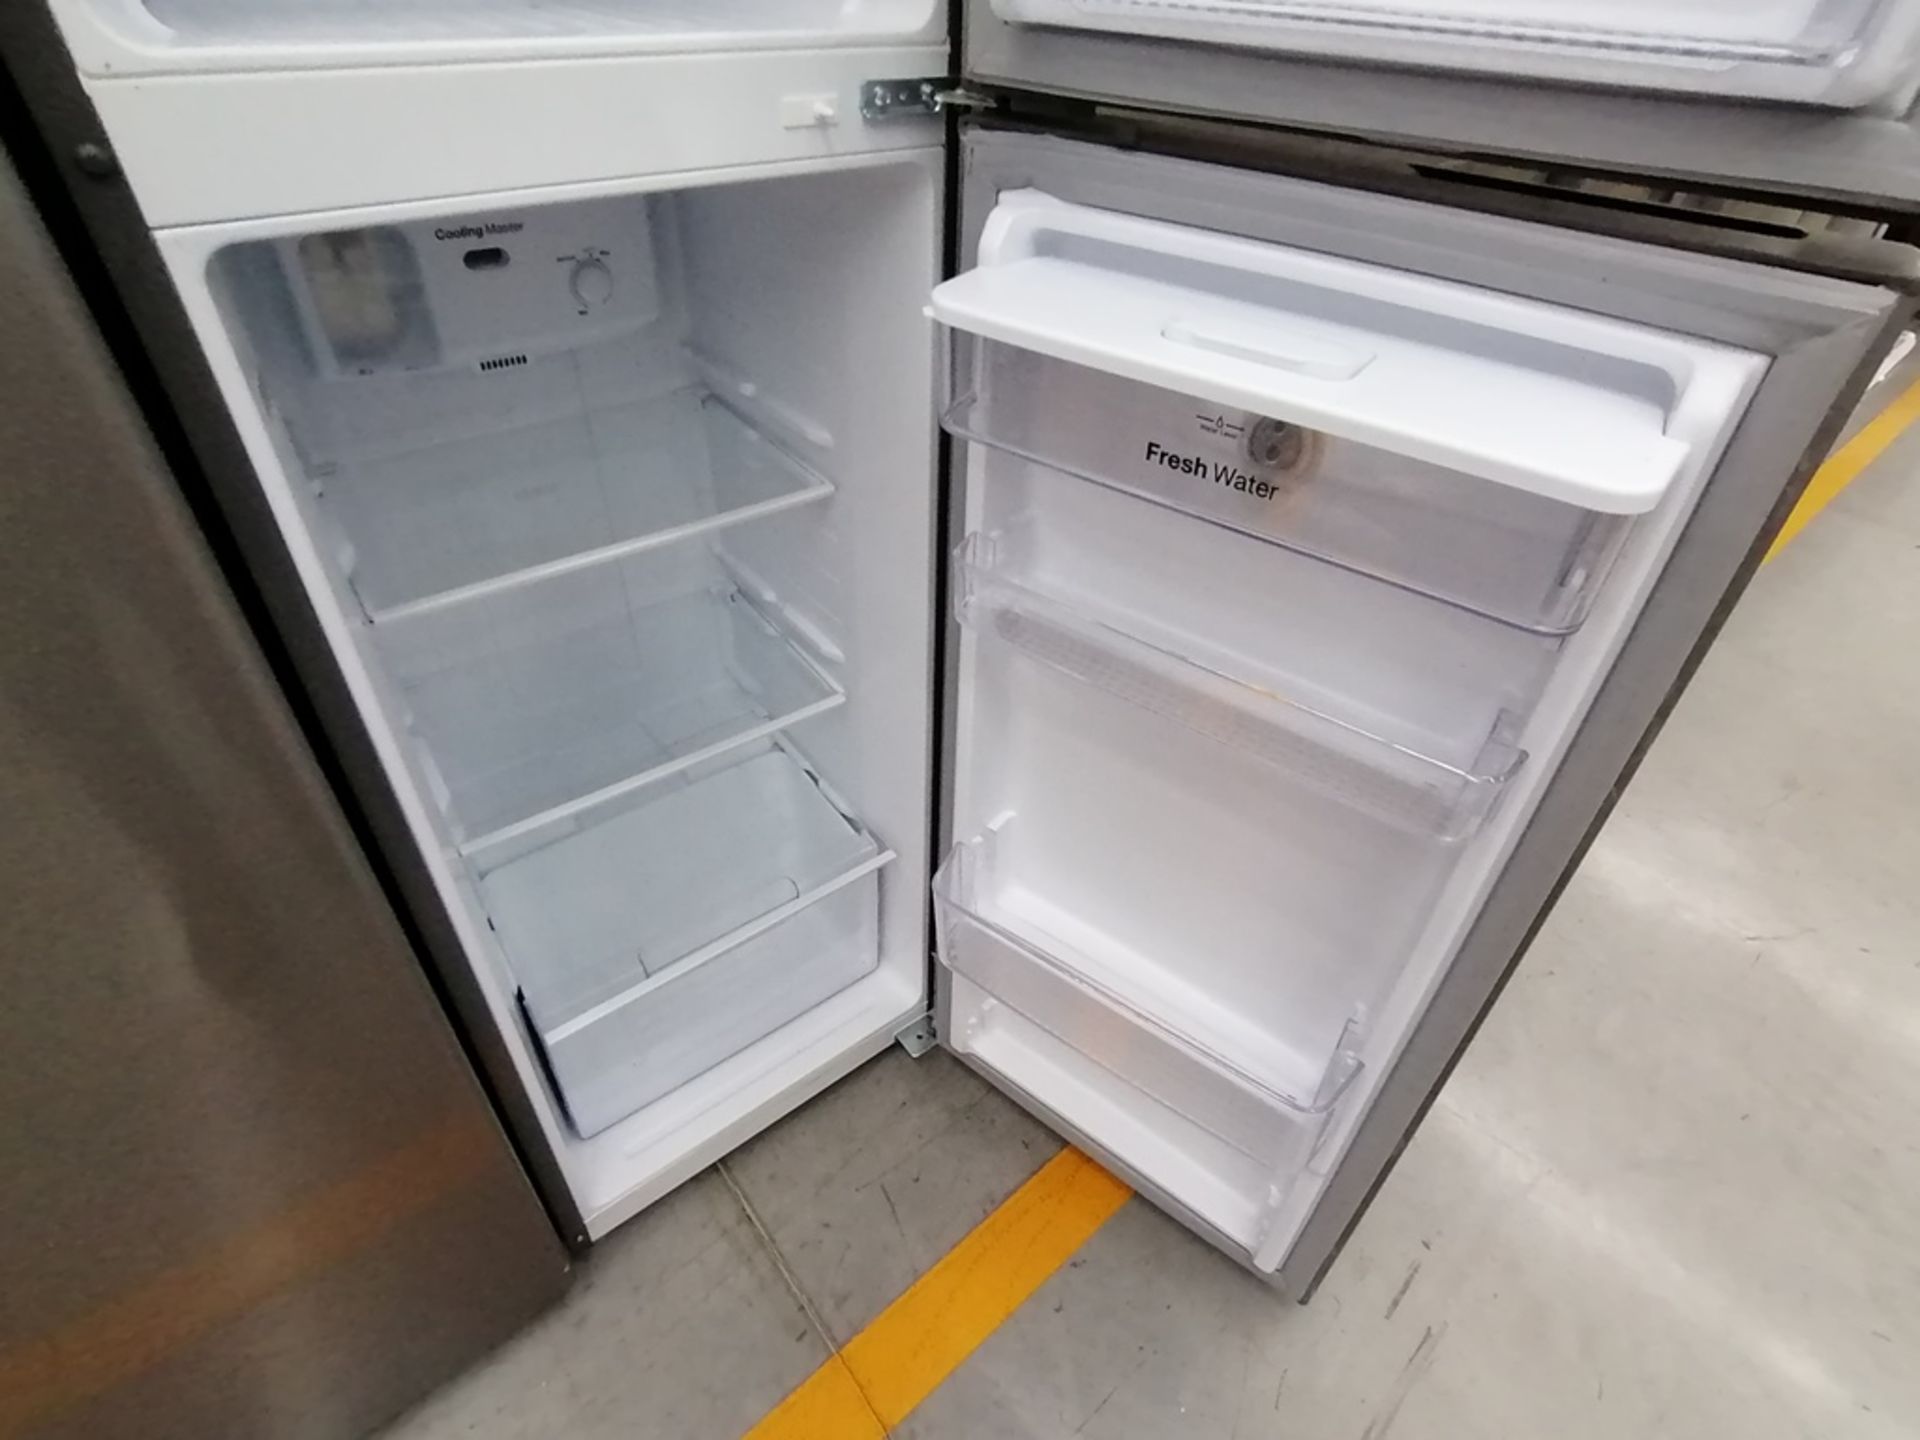 Lote de 2 Refrigeradores incluye: 1 Refrigerador con dispensador de agua, Marca Winia, Modelo DFR32 - Image 5 of 15